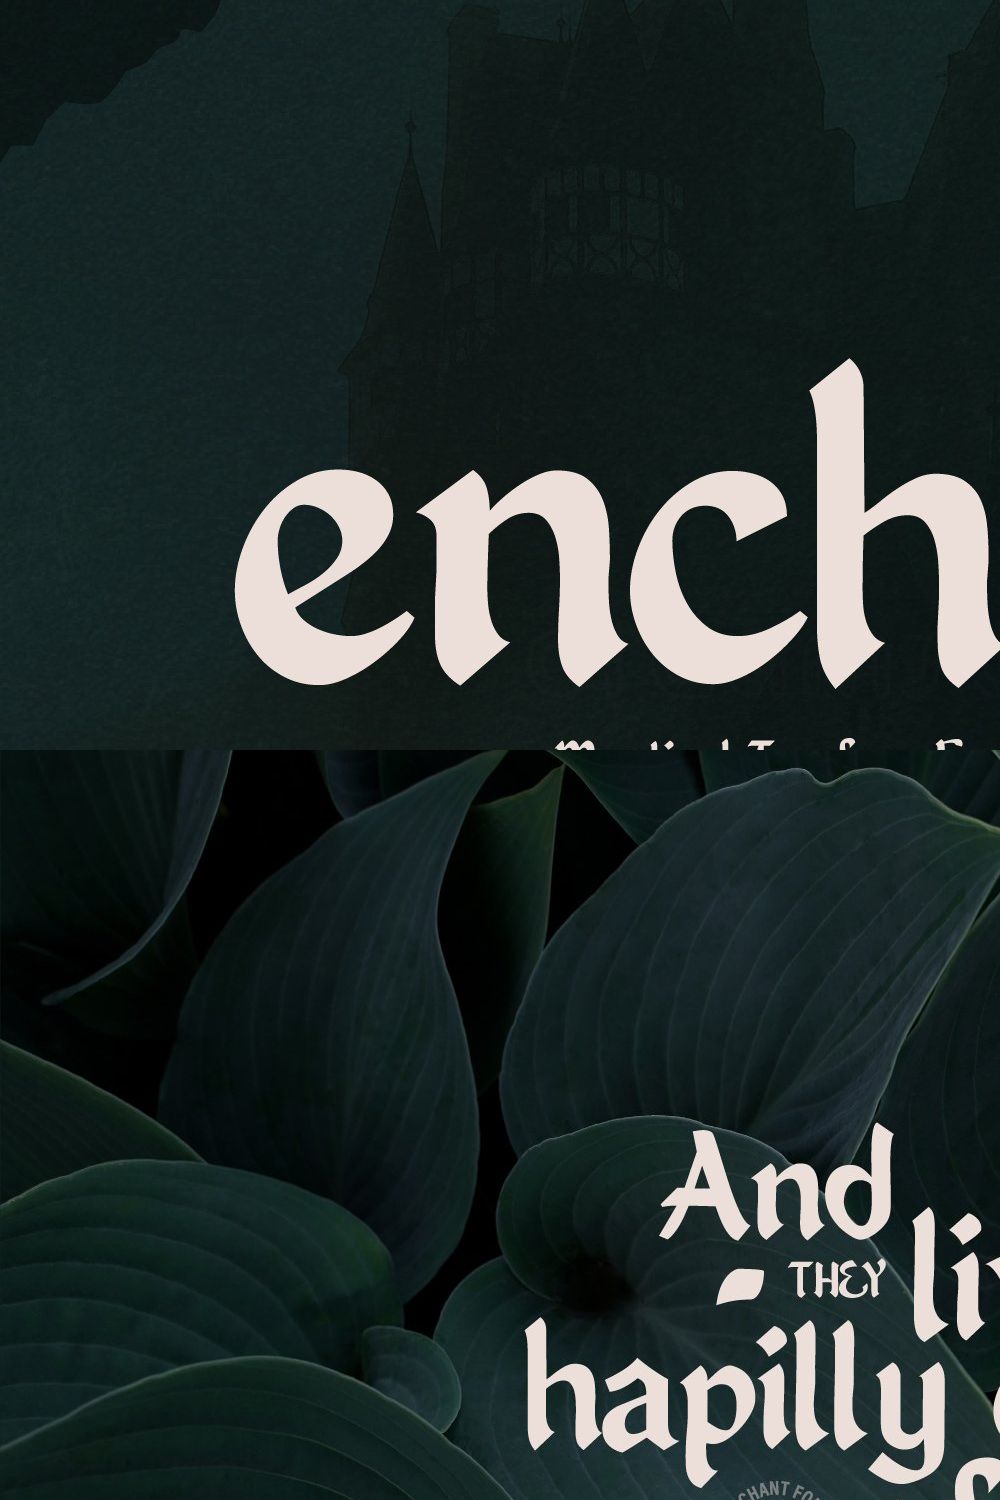 Enchant - Mystical 1600s Typeface pinterest preview image.